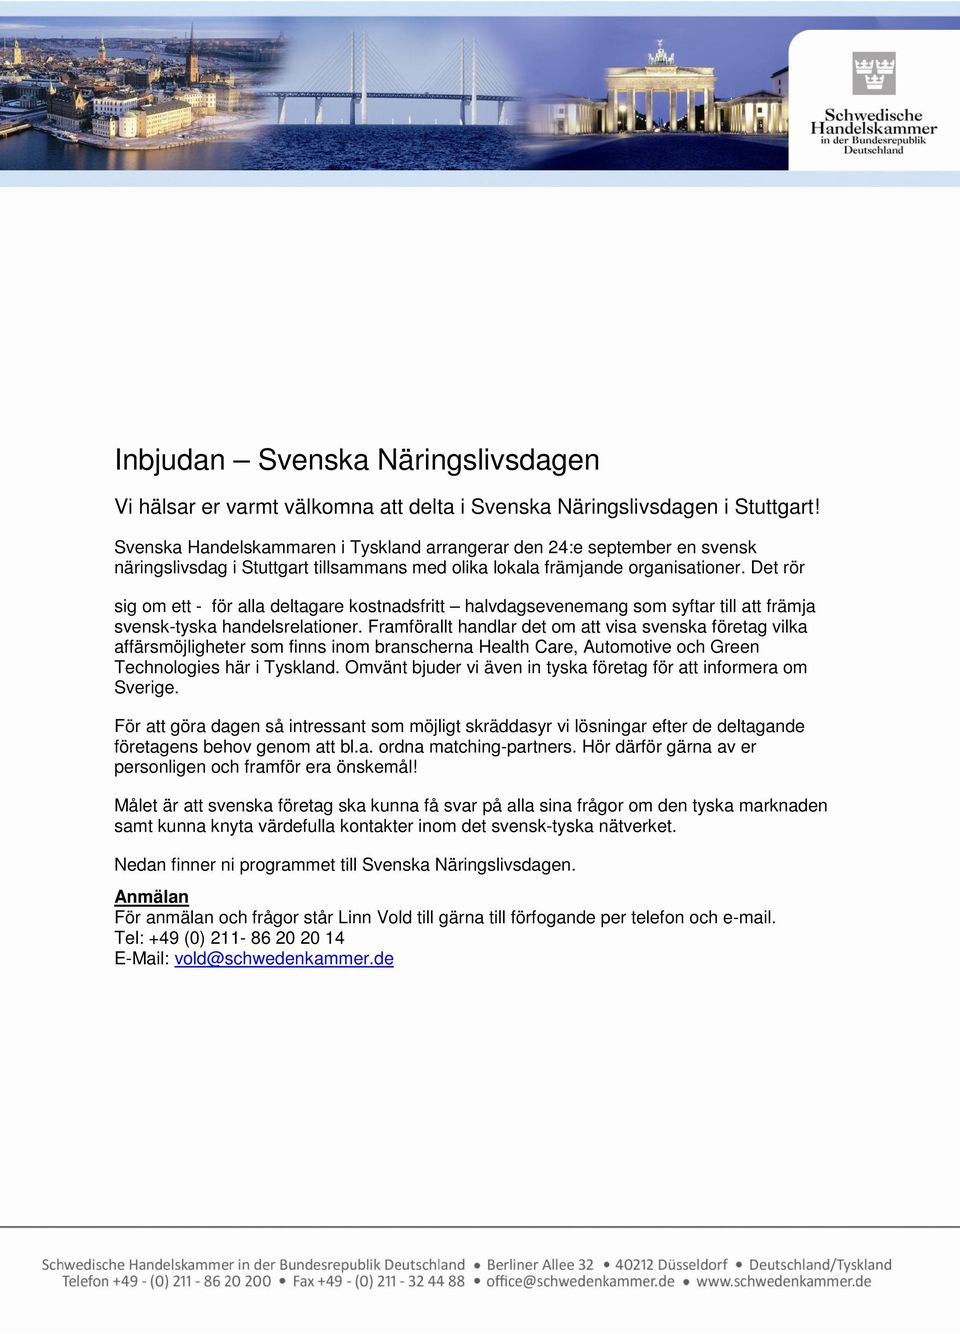 Det rör sig om ett - för alla deltagare kostnadsfritt halvdagsevenemang som syftar till att främja svensk-tyska handelsrelationer.